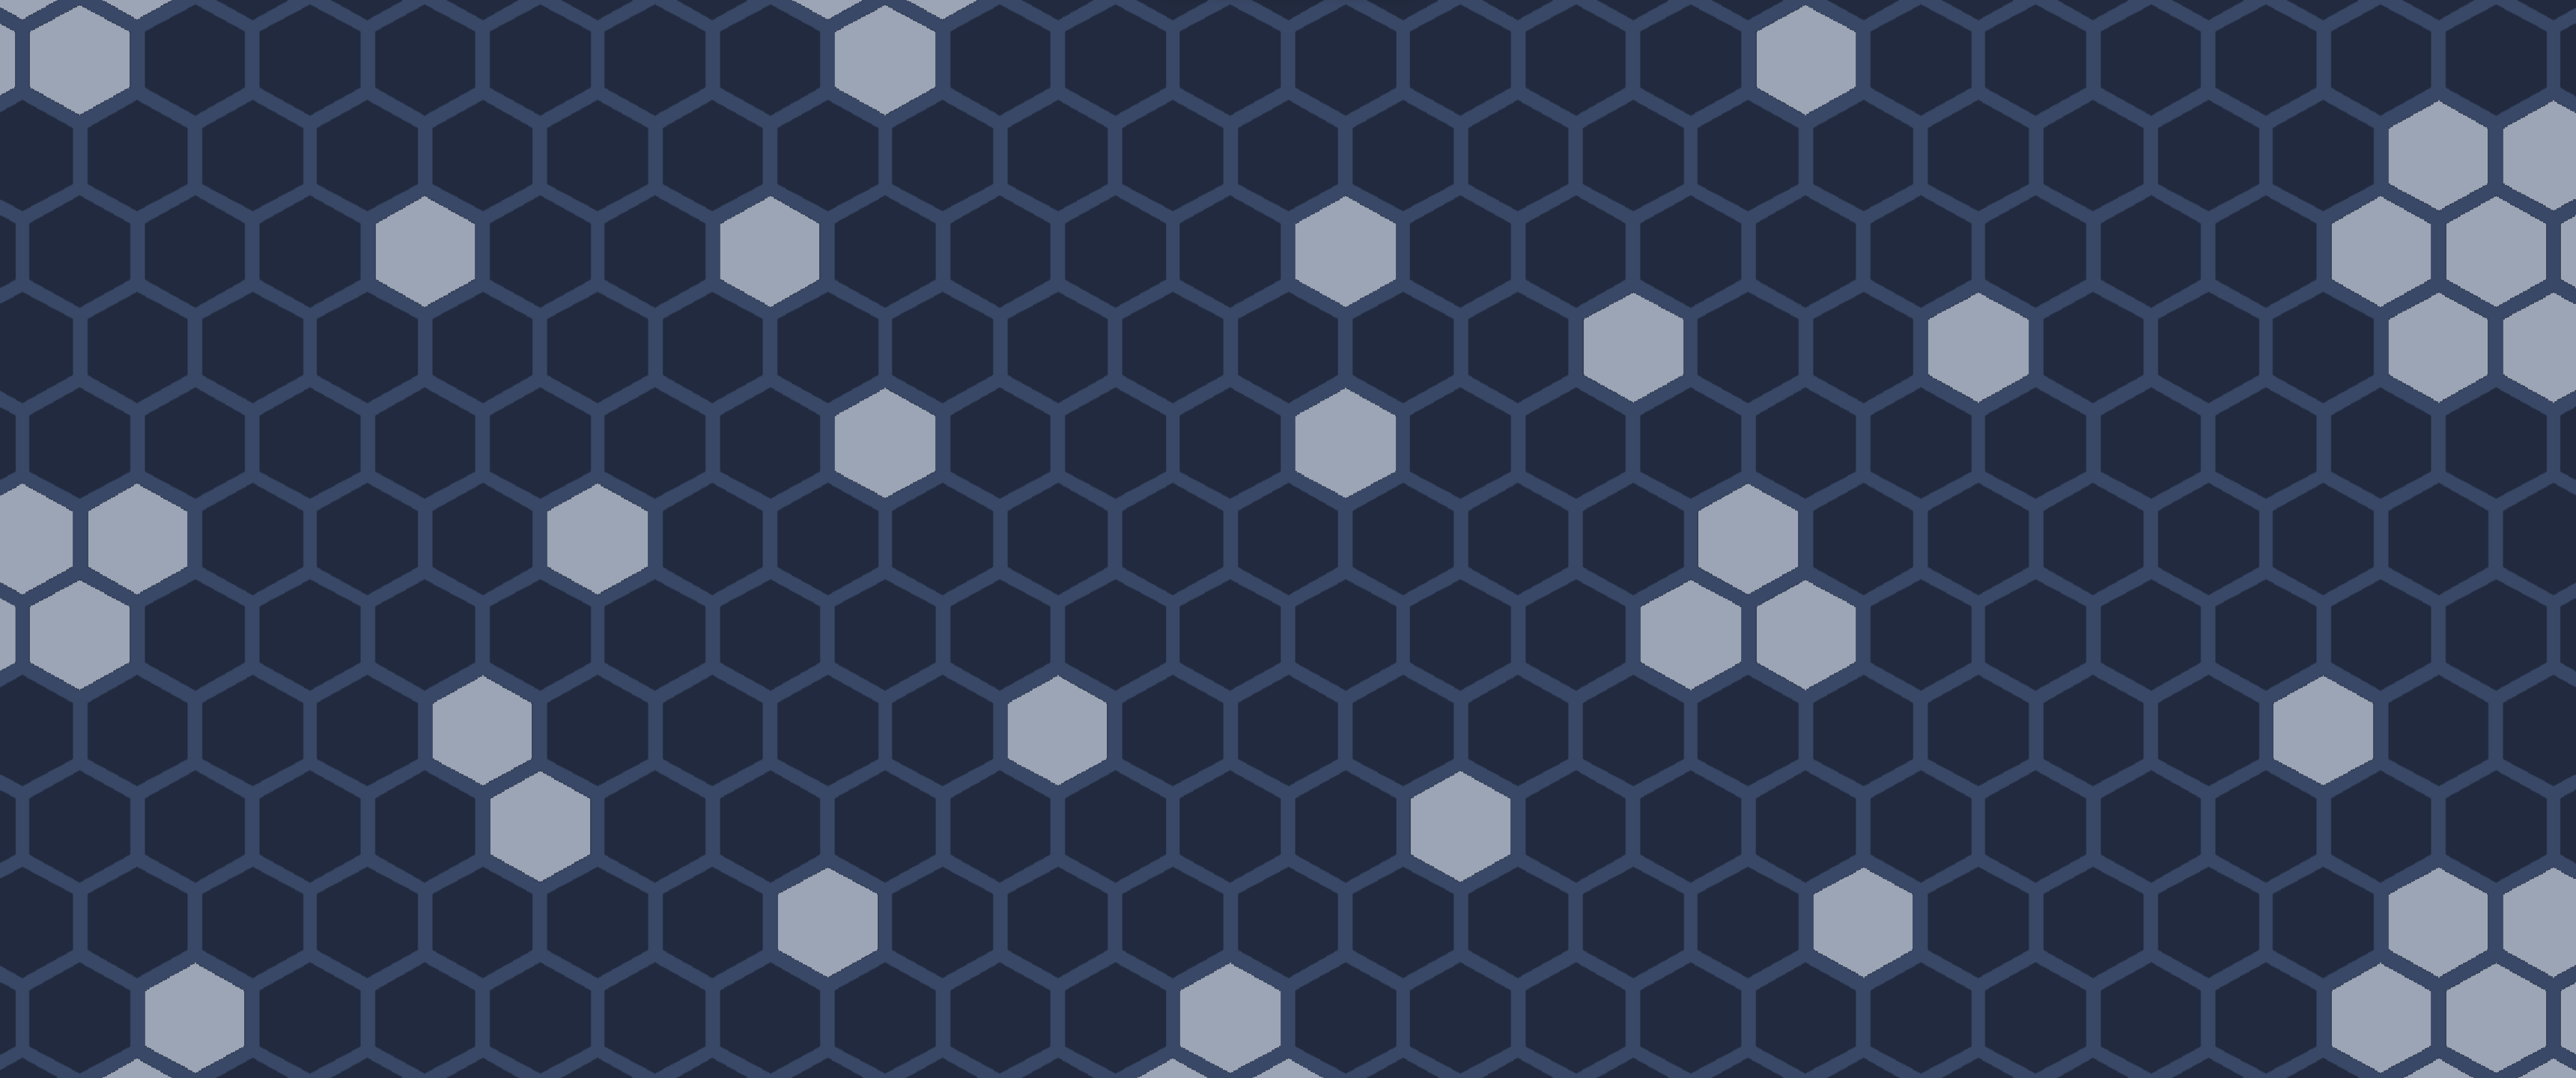 Hexagon Maze